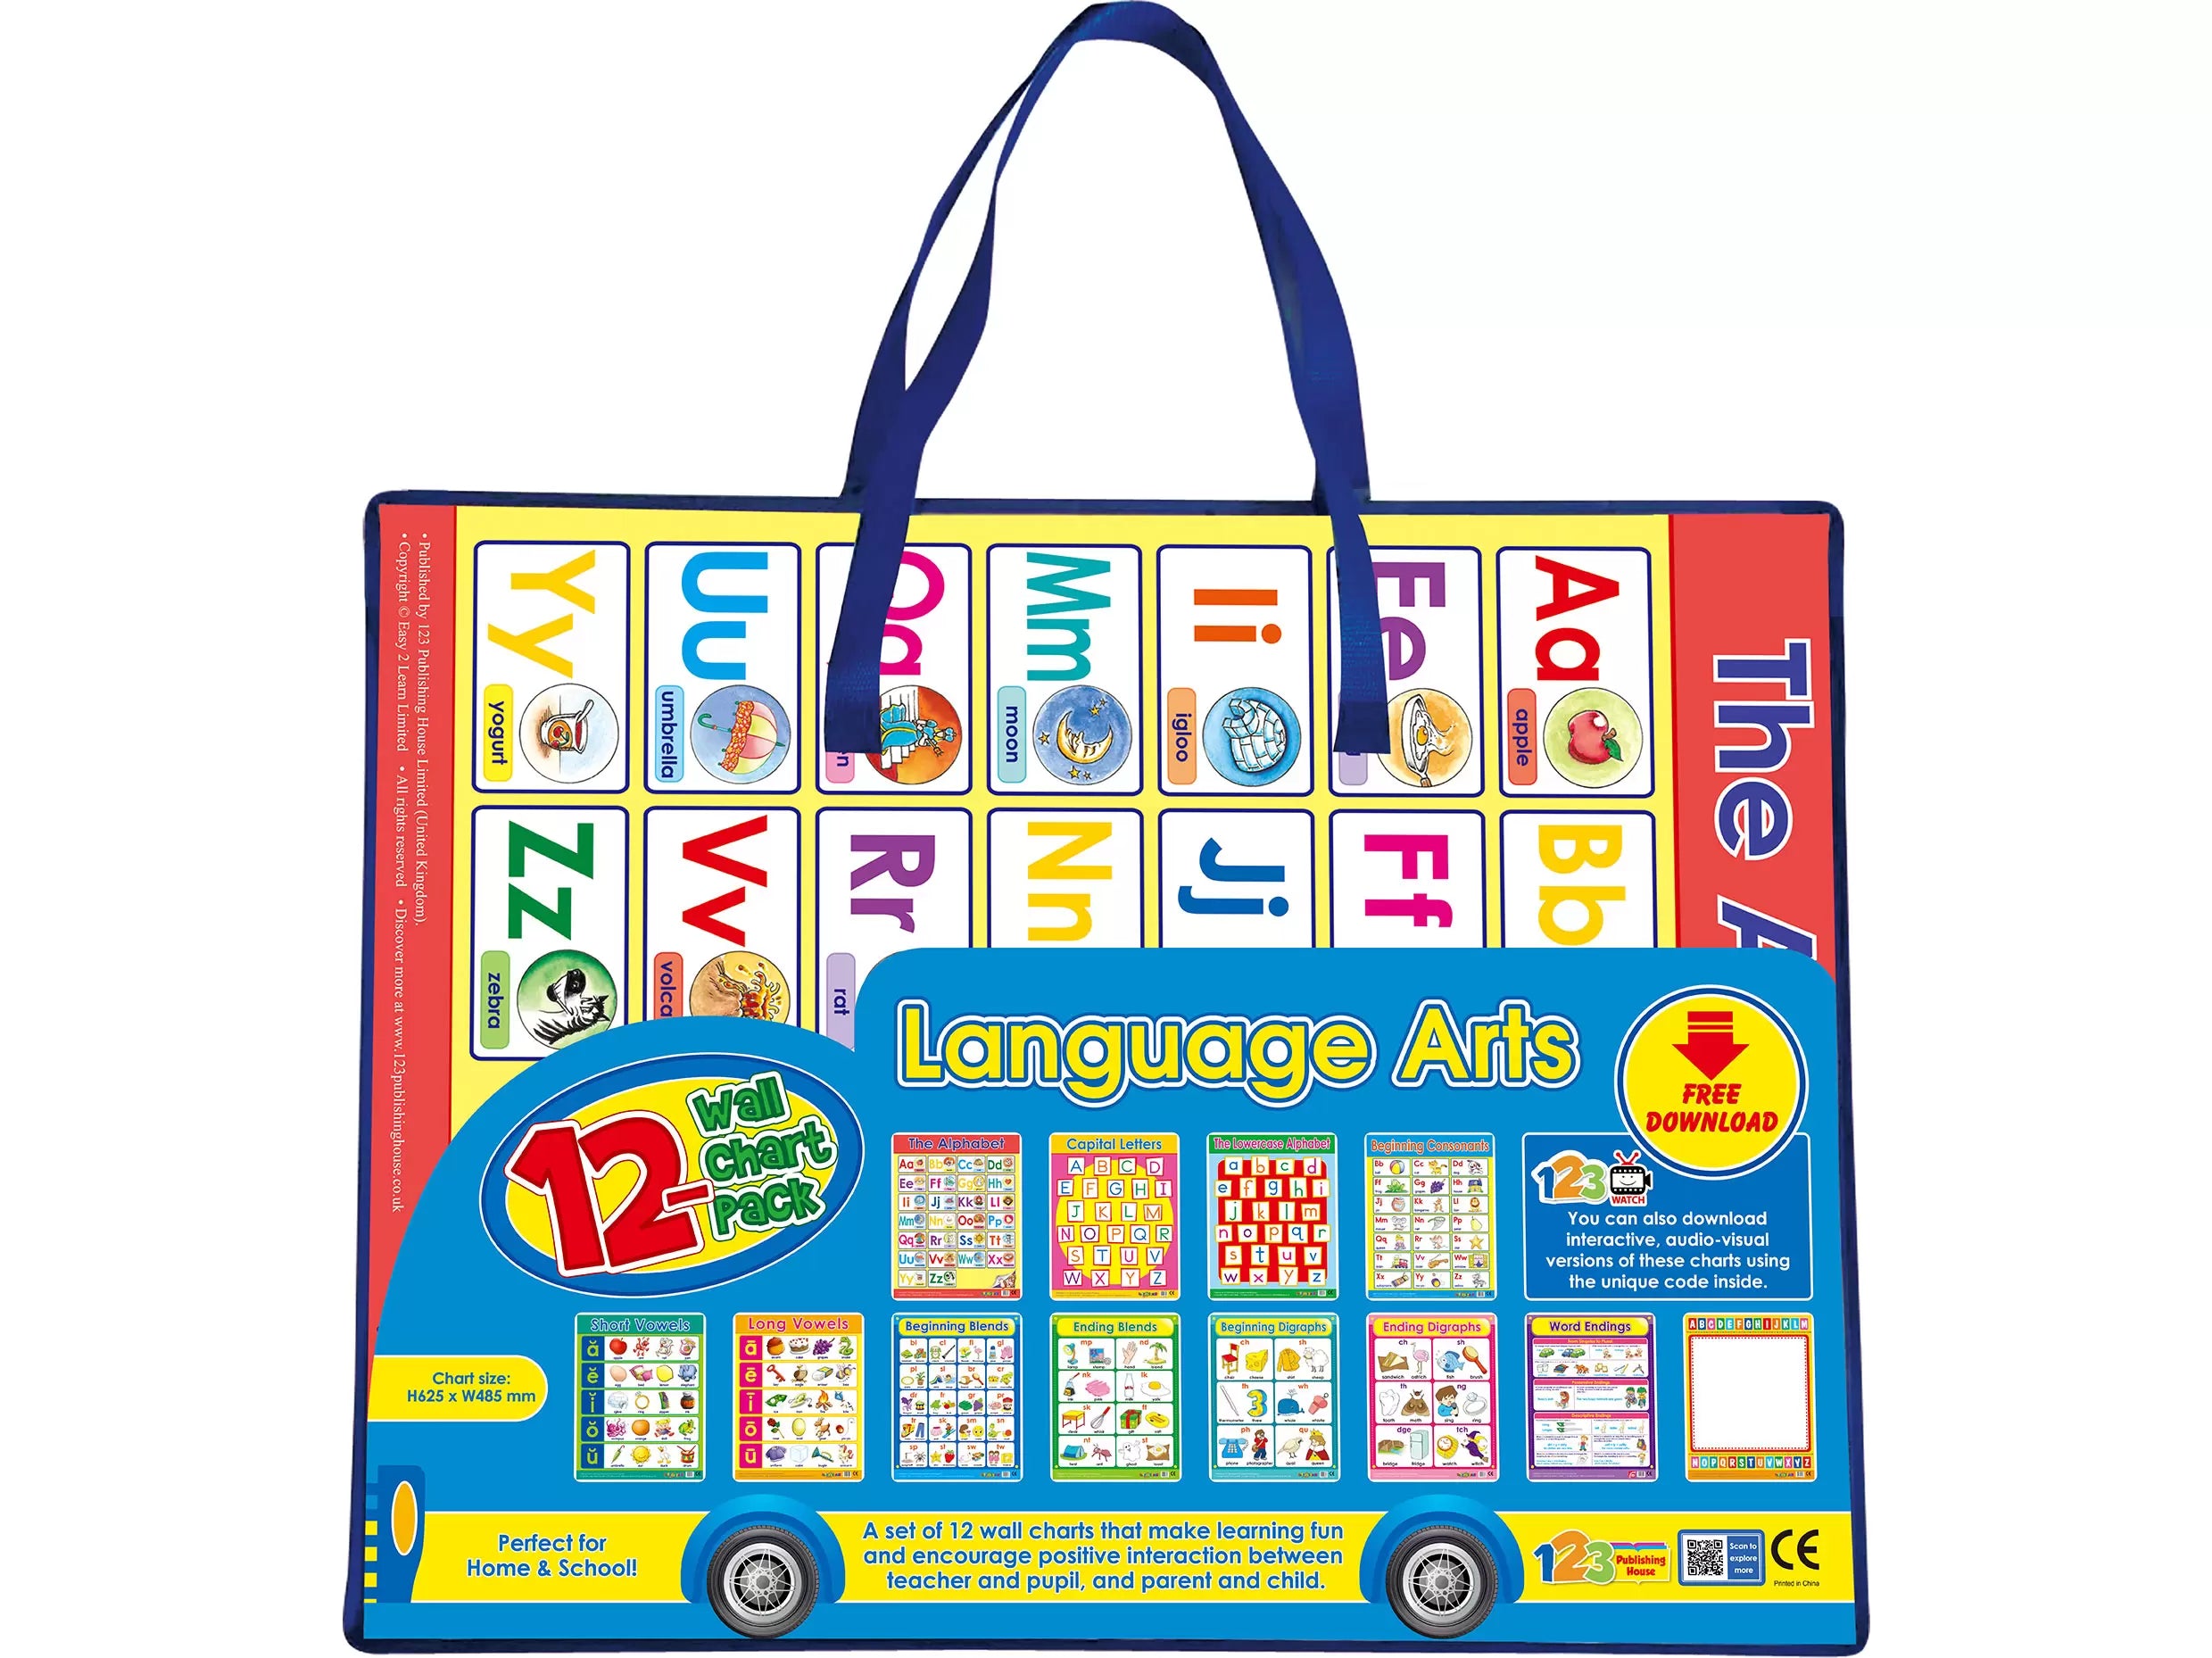 Language Arts (12 Wall Charts) - Educational Wall Chart Pack in English